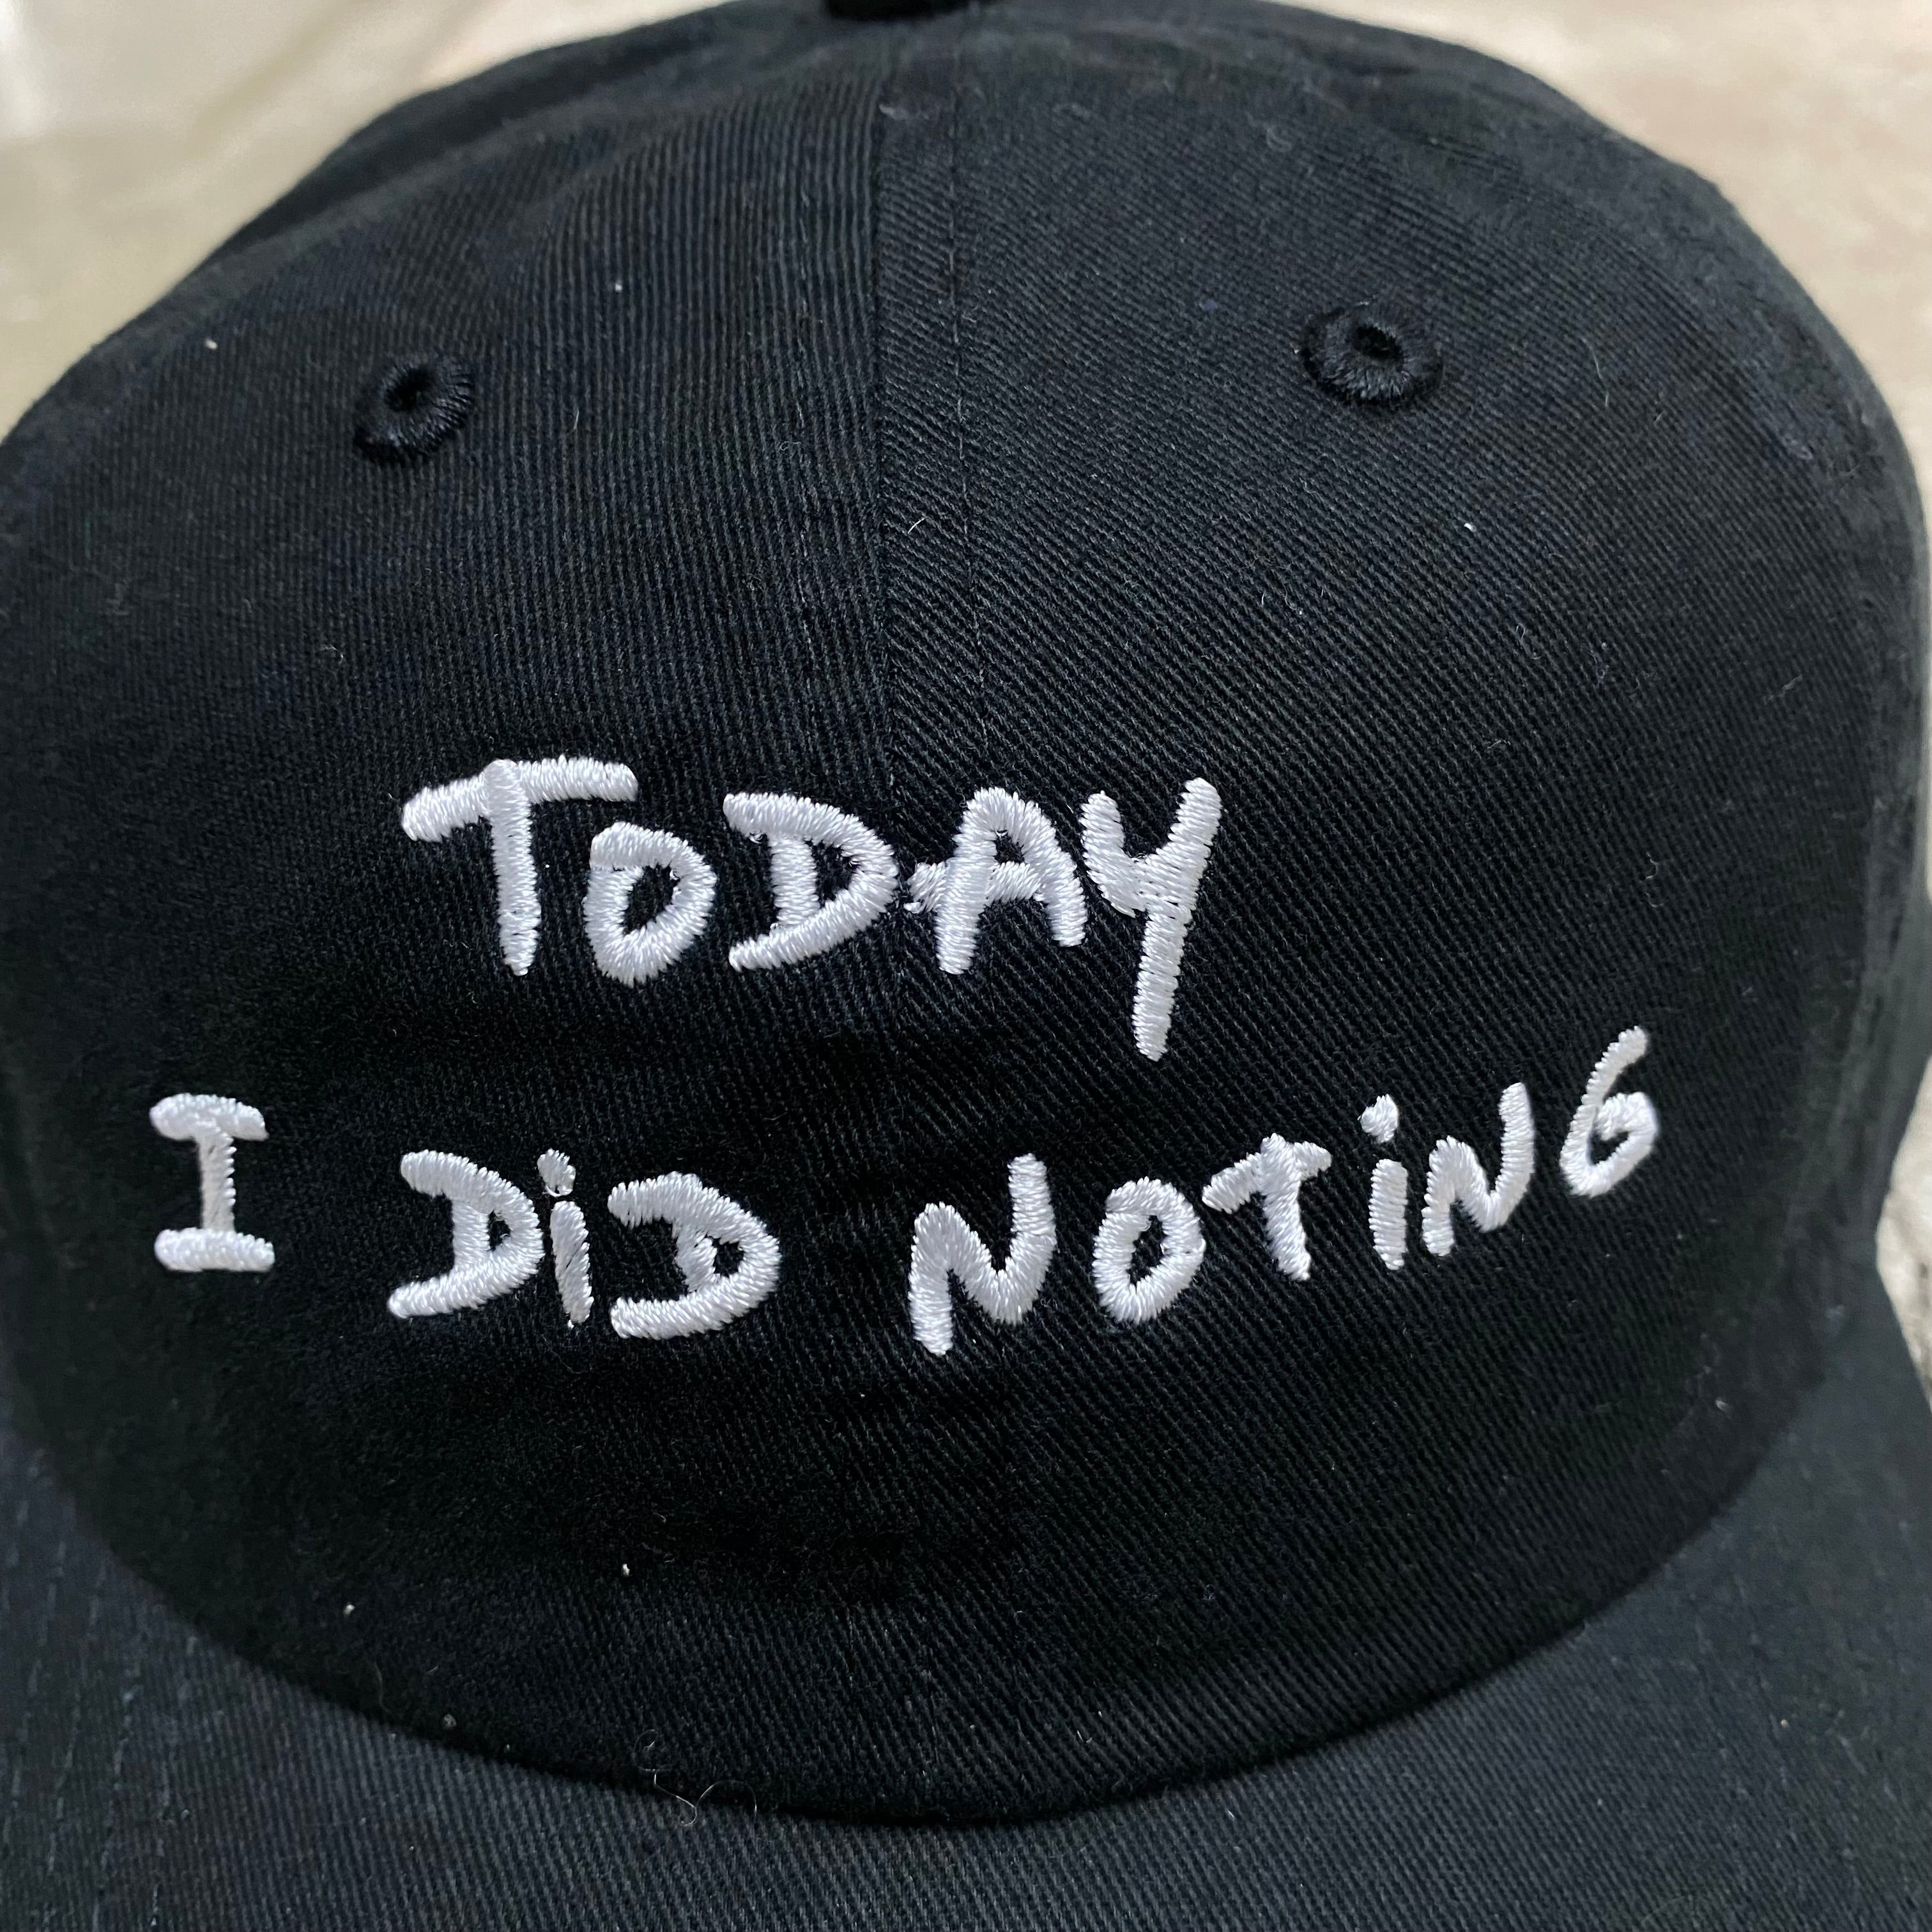 Do Nothing Congress CAP DNC x Thomas Lelu " TODAY I DID NOTHING " / Do Nothing Congress